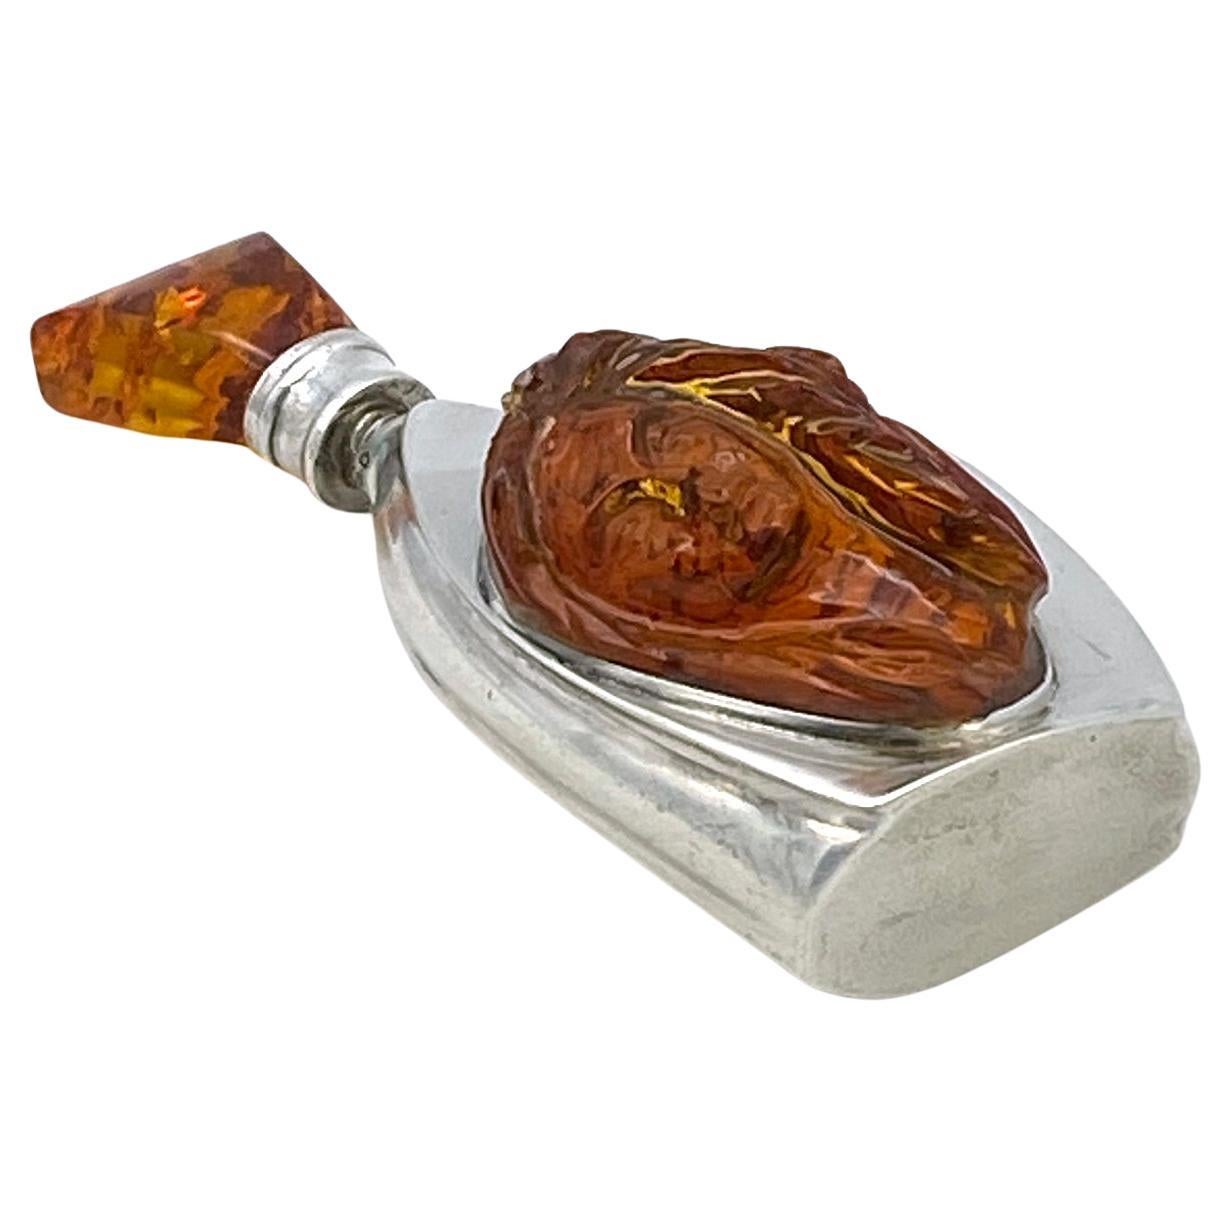 Il s'agit d'un flacon de parfum en sterling de style Art Nouveau avec de l'ambre. Le corps de la bouteille en sterling de forme libre est monté avec une grande tête de femme aux cheveux longs sculptée et signée ML. Le bouchon en argent et le